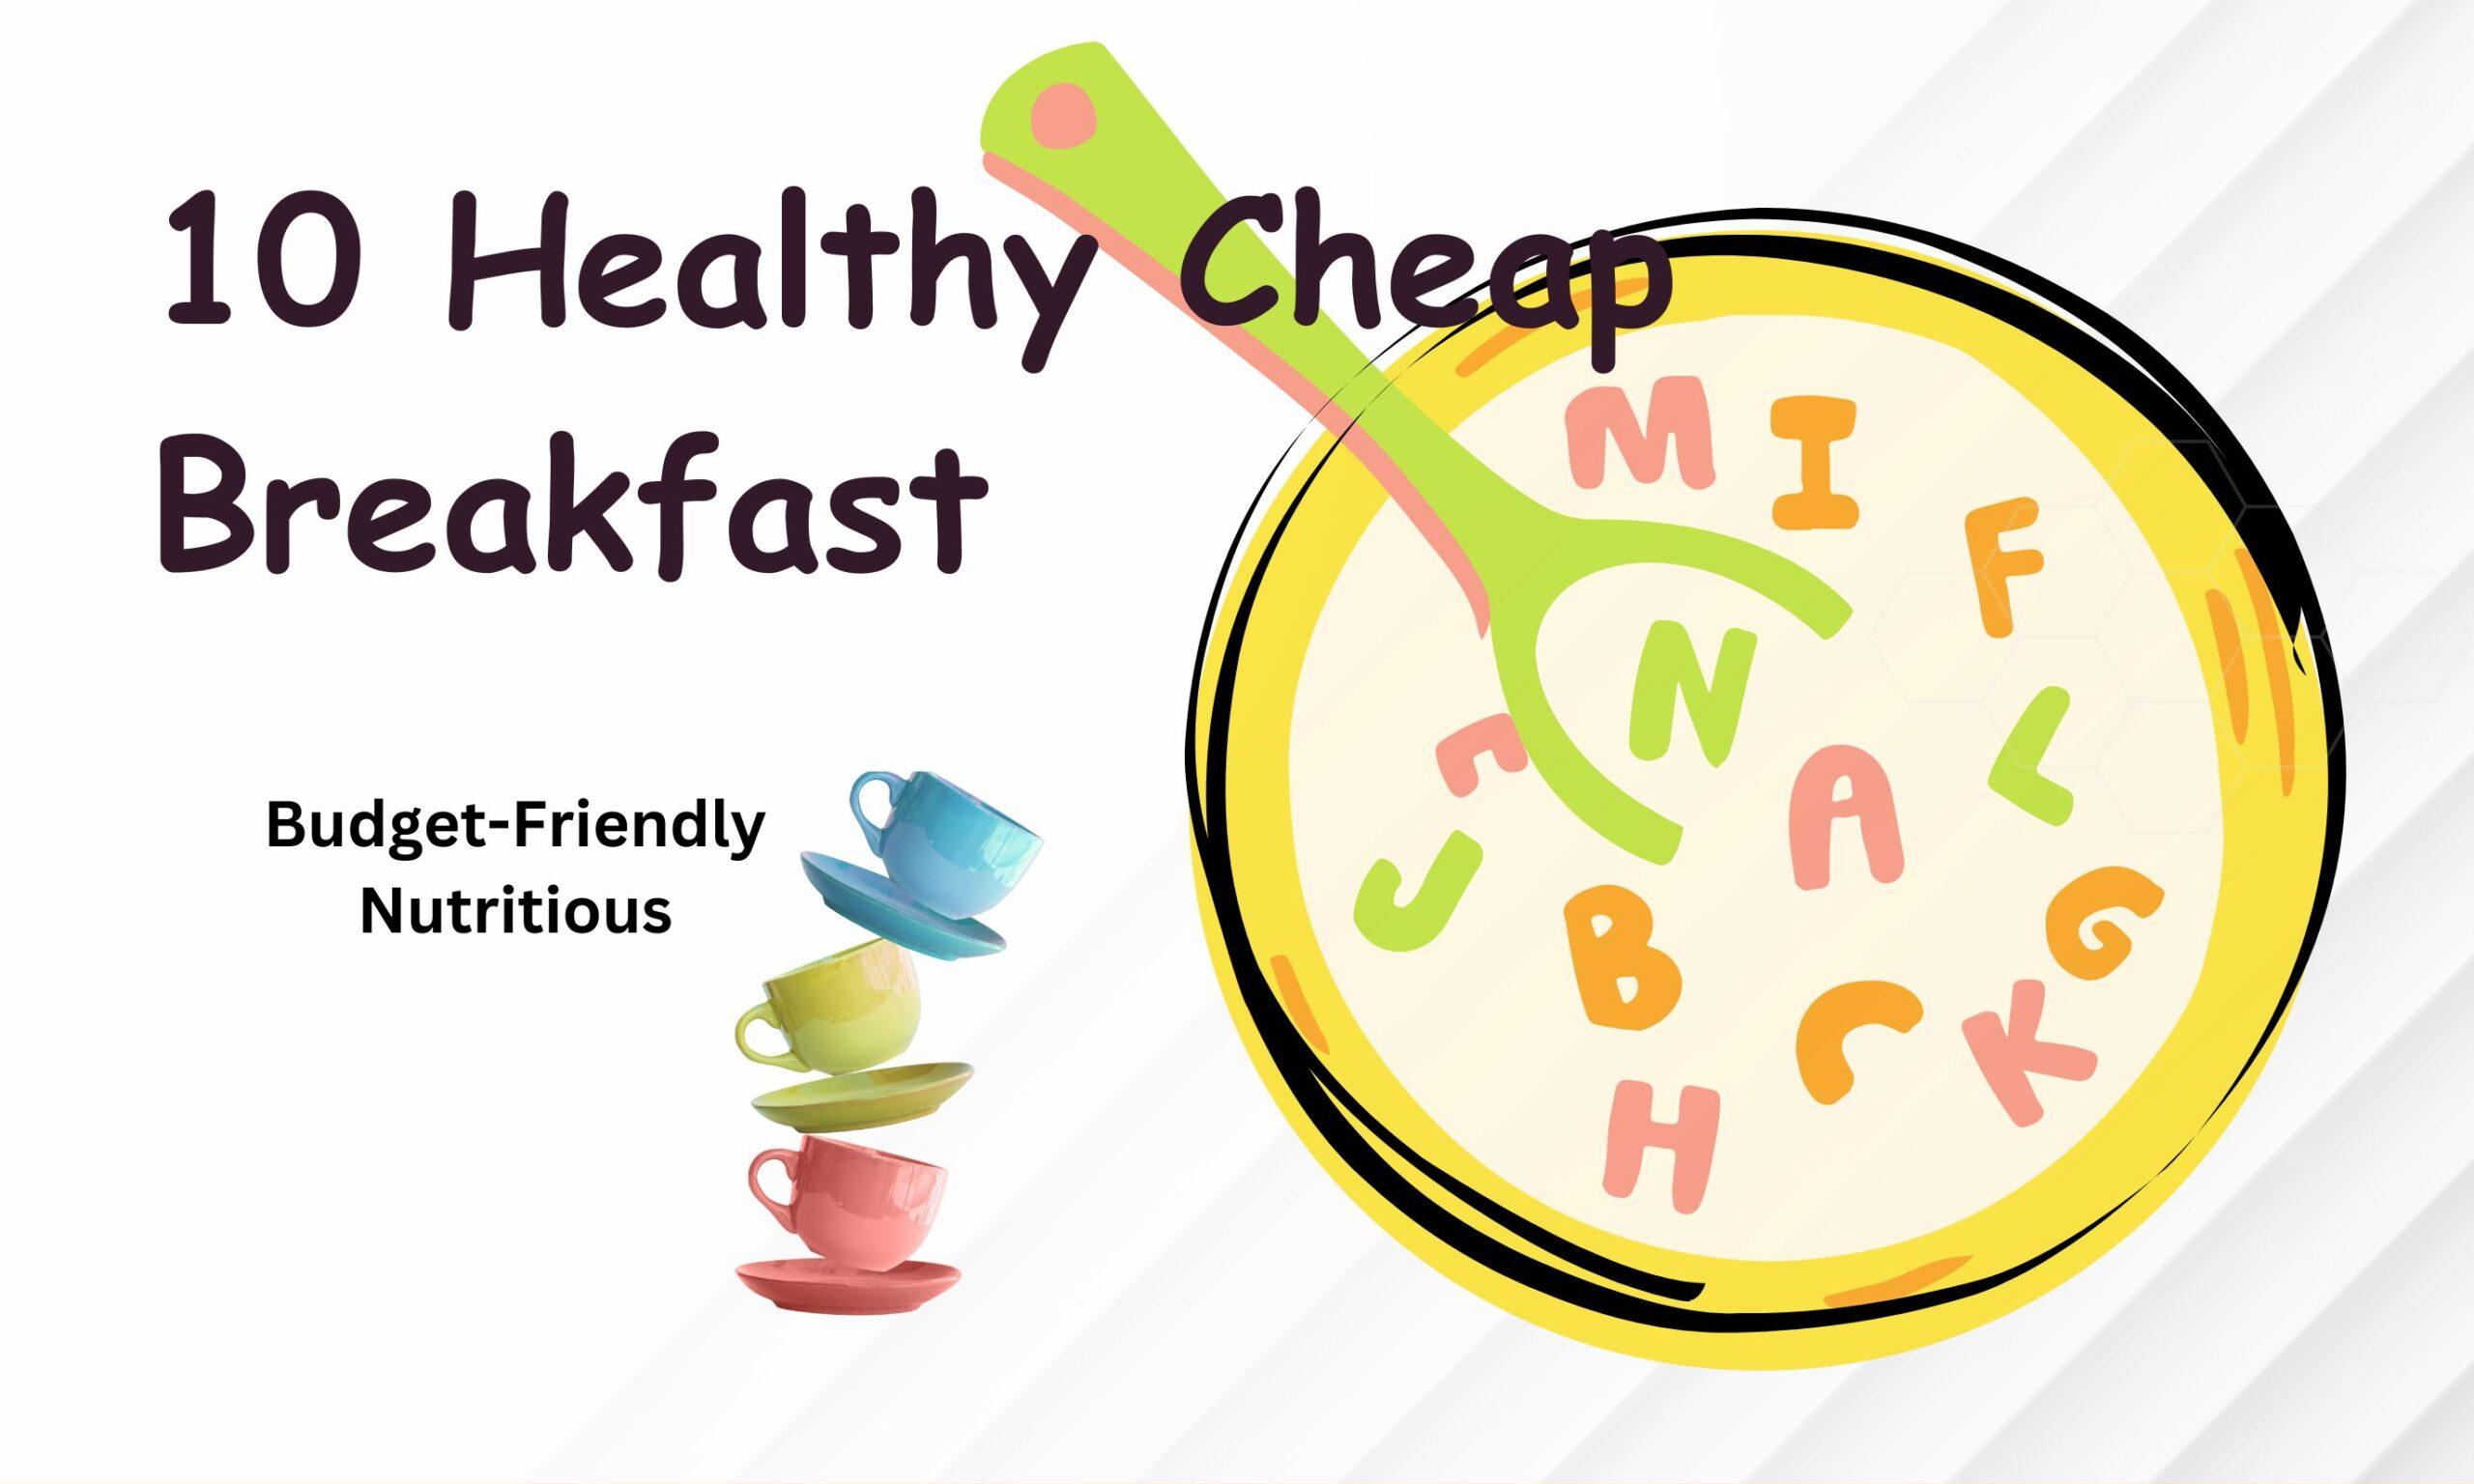 10 Healthy Cheap Breakfast